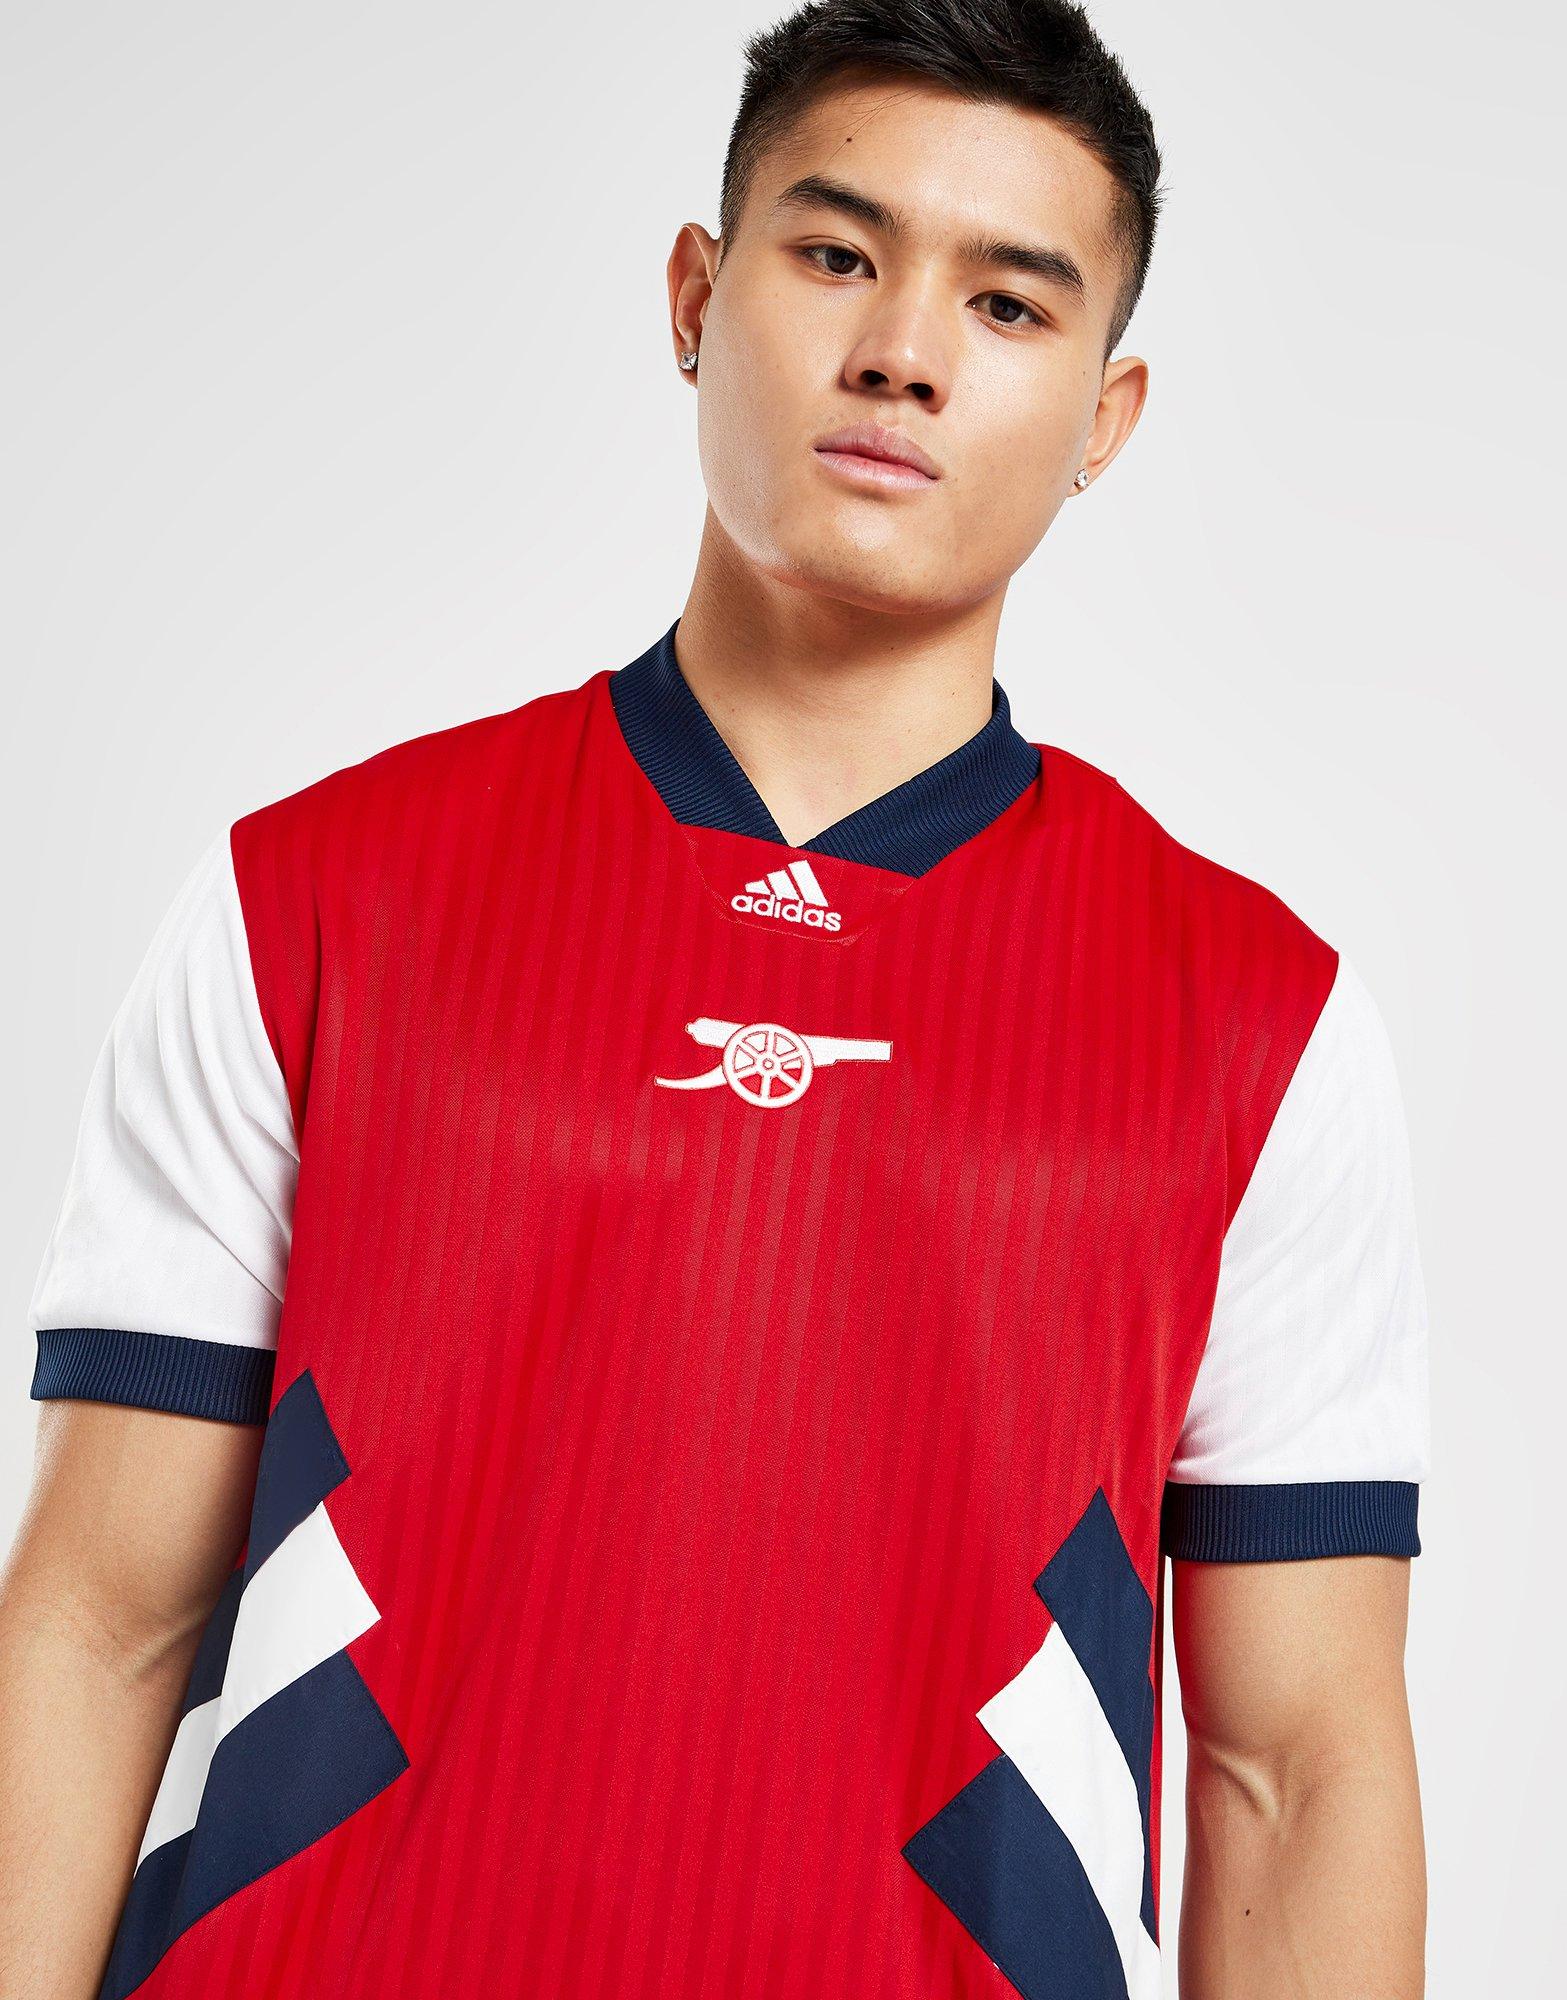 Adidas Mens Clothing - Football - Arsenal - Clothing - JD Sports